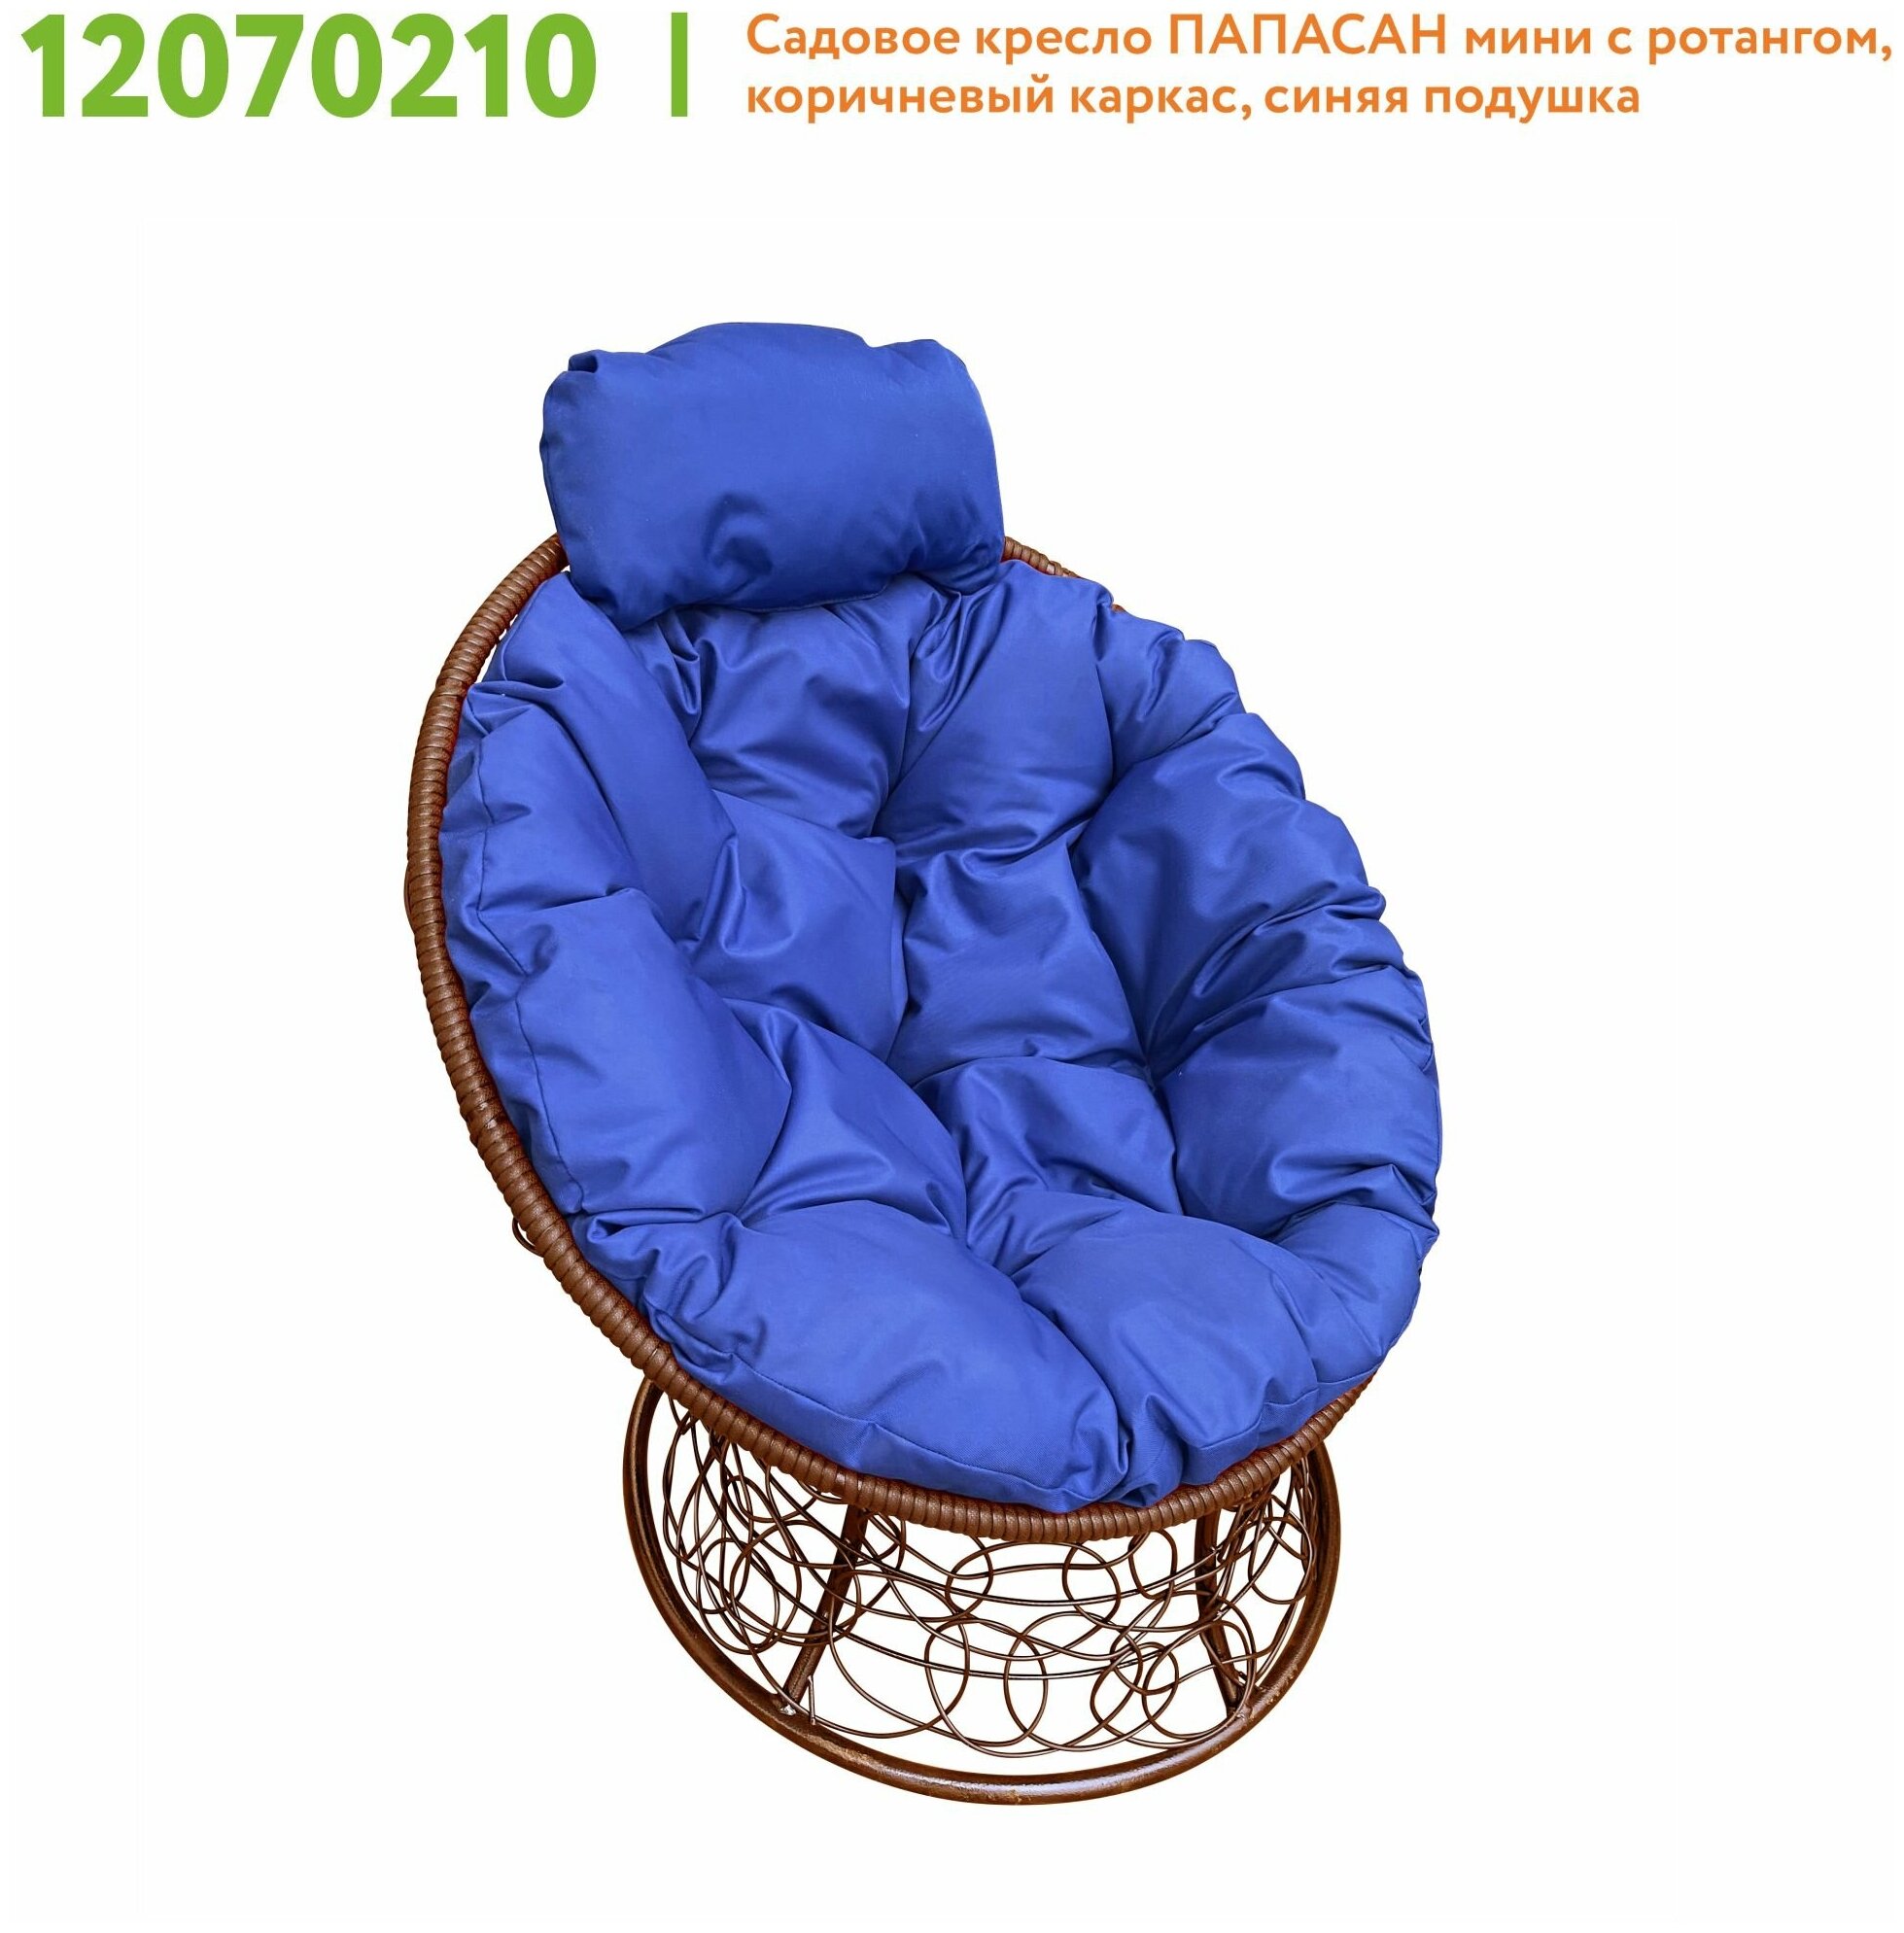 Кресло M-Group папасан мини ротанг коричневое, синяя подушка - фотография № 4